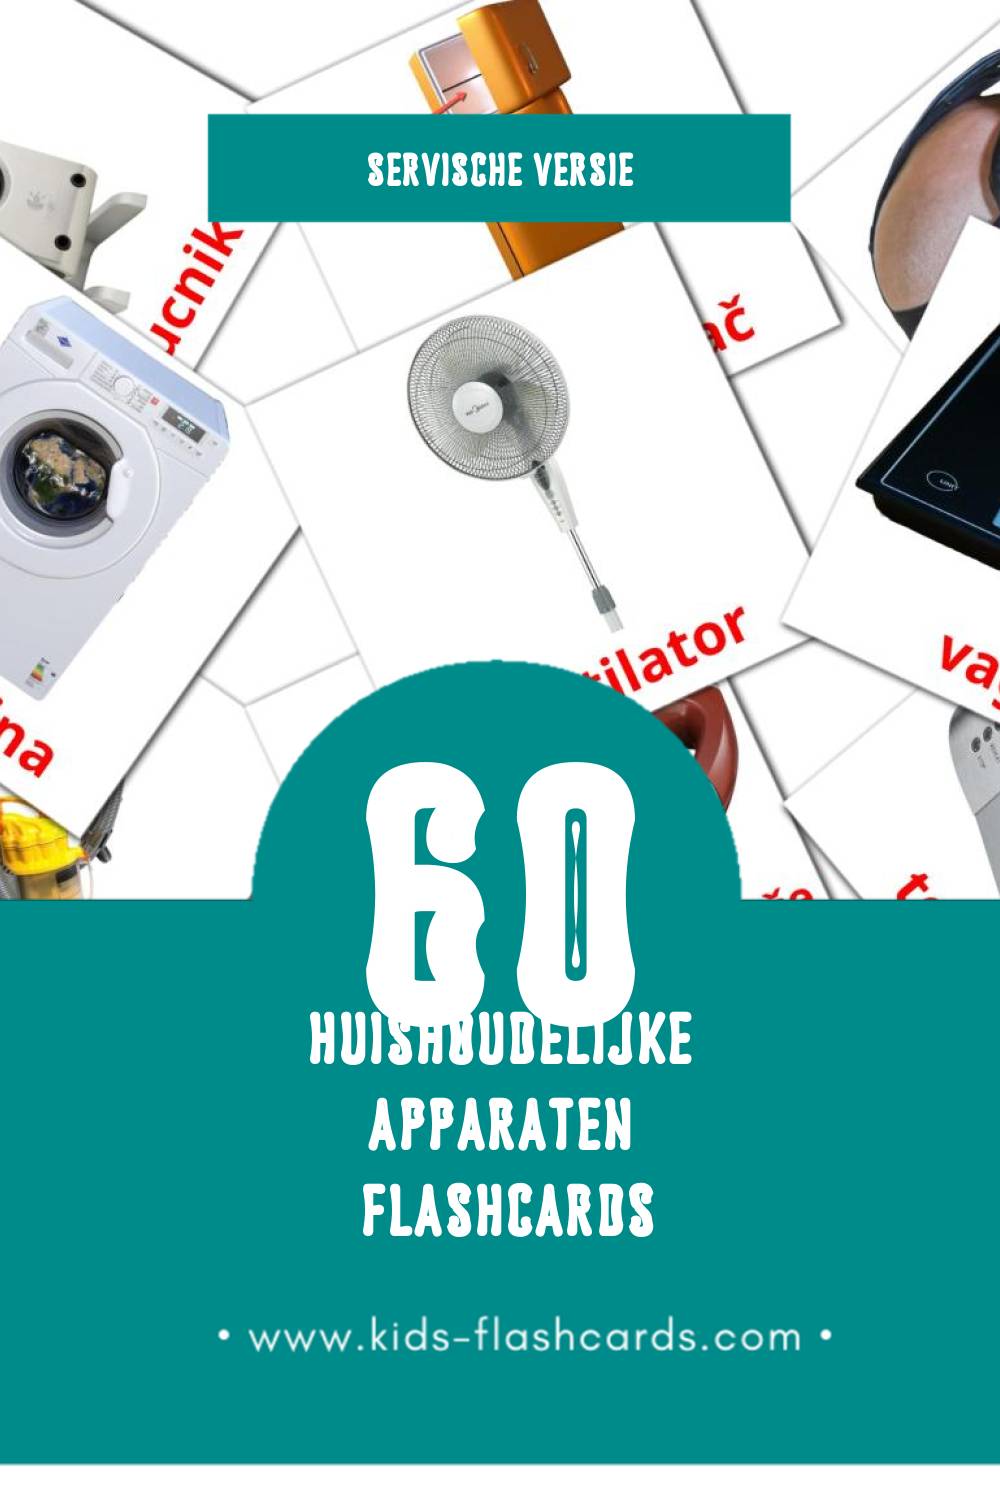 Visuele Kućni aparati Flashcards voor Kleuters (60 kaarten in het Servisch)